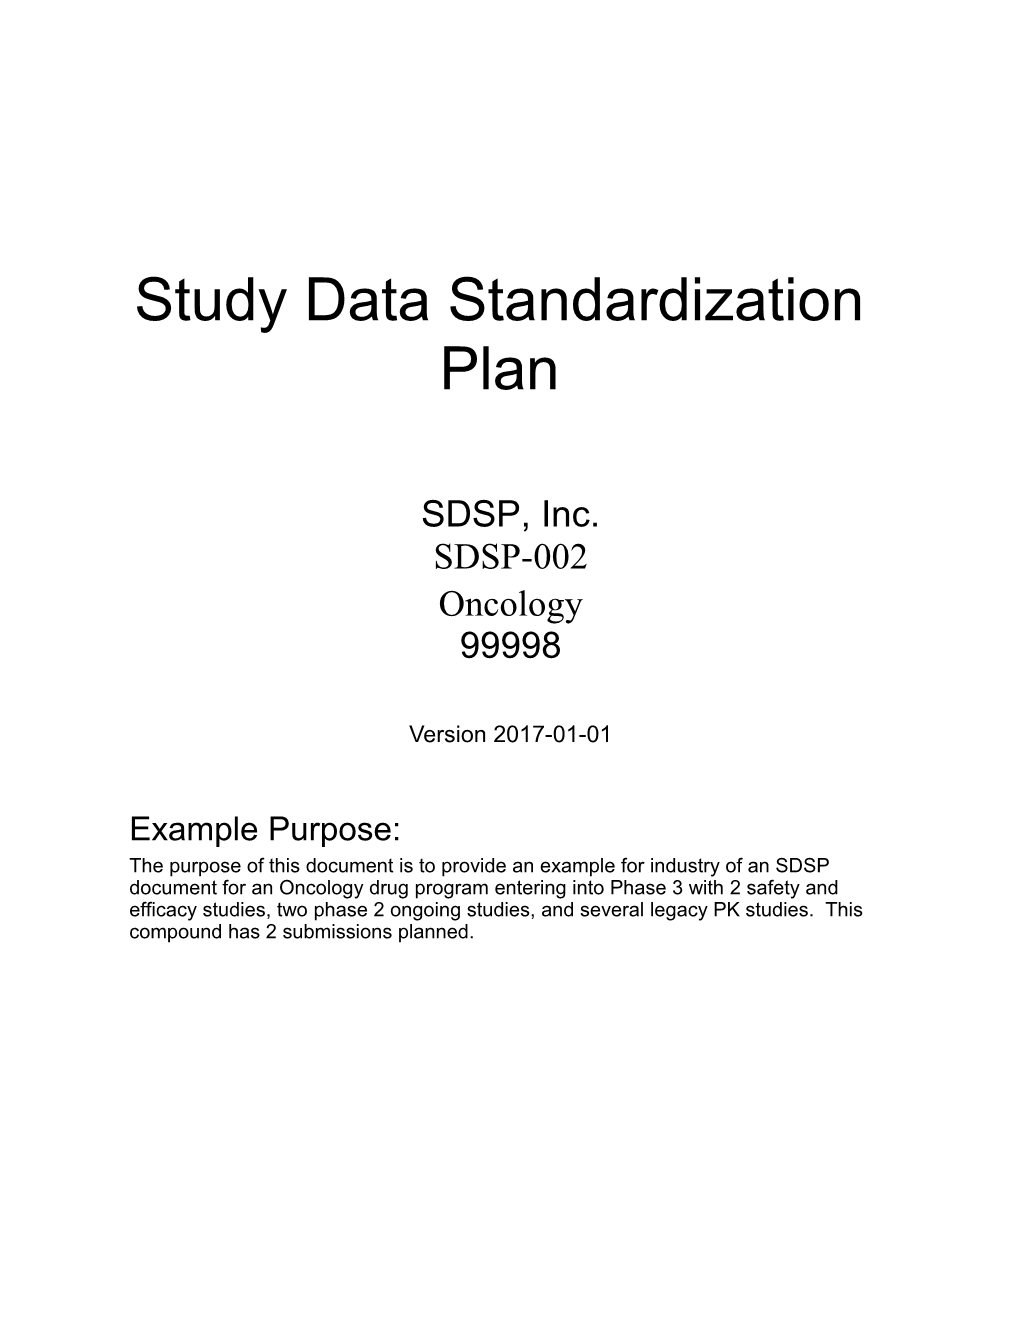 SDSP, Inc. SDSP-002 Oncology 99998 SDSP